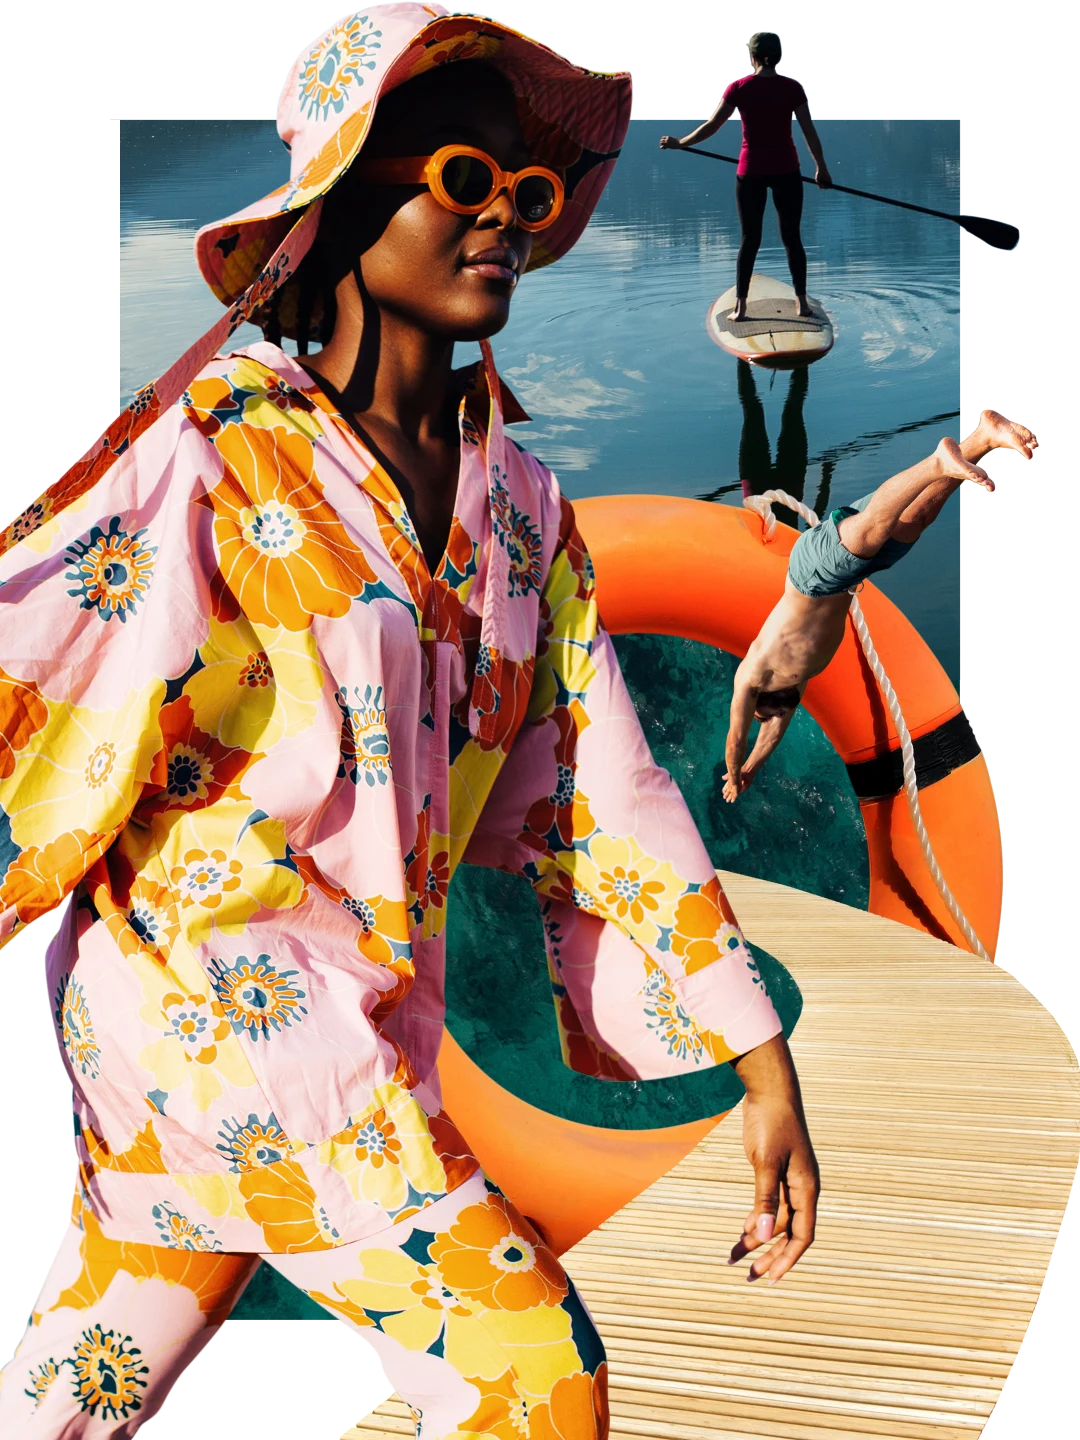 Collage de artículos con temática de lago. Mujer de piel oscura con atuendo rosa de estampado floral para el lago a la izquierda, junto a un paseo de madera y un nadador saltando al agua a través de un flotador circular naranja. Persona haciendo paddleboard en el fondo.
